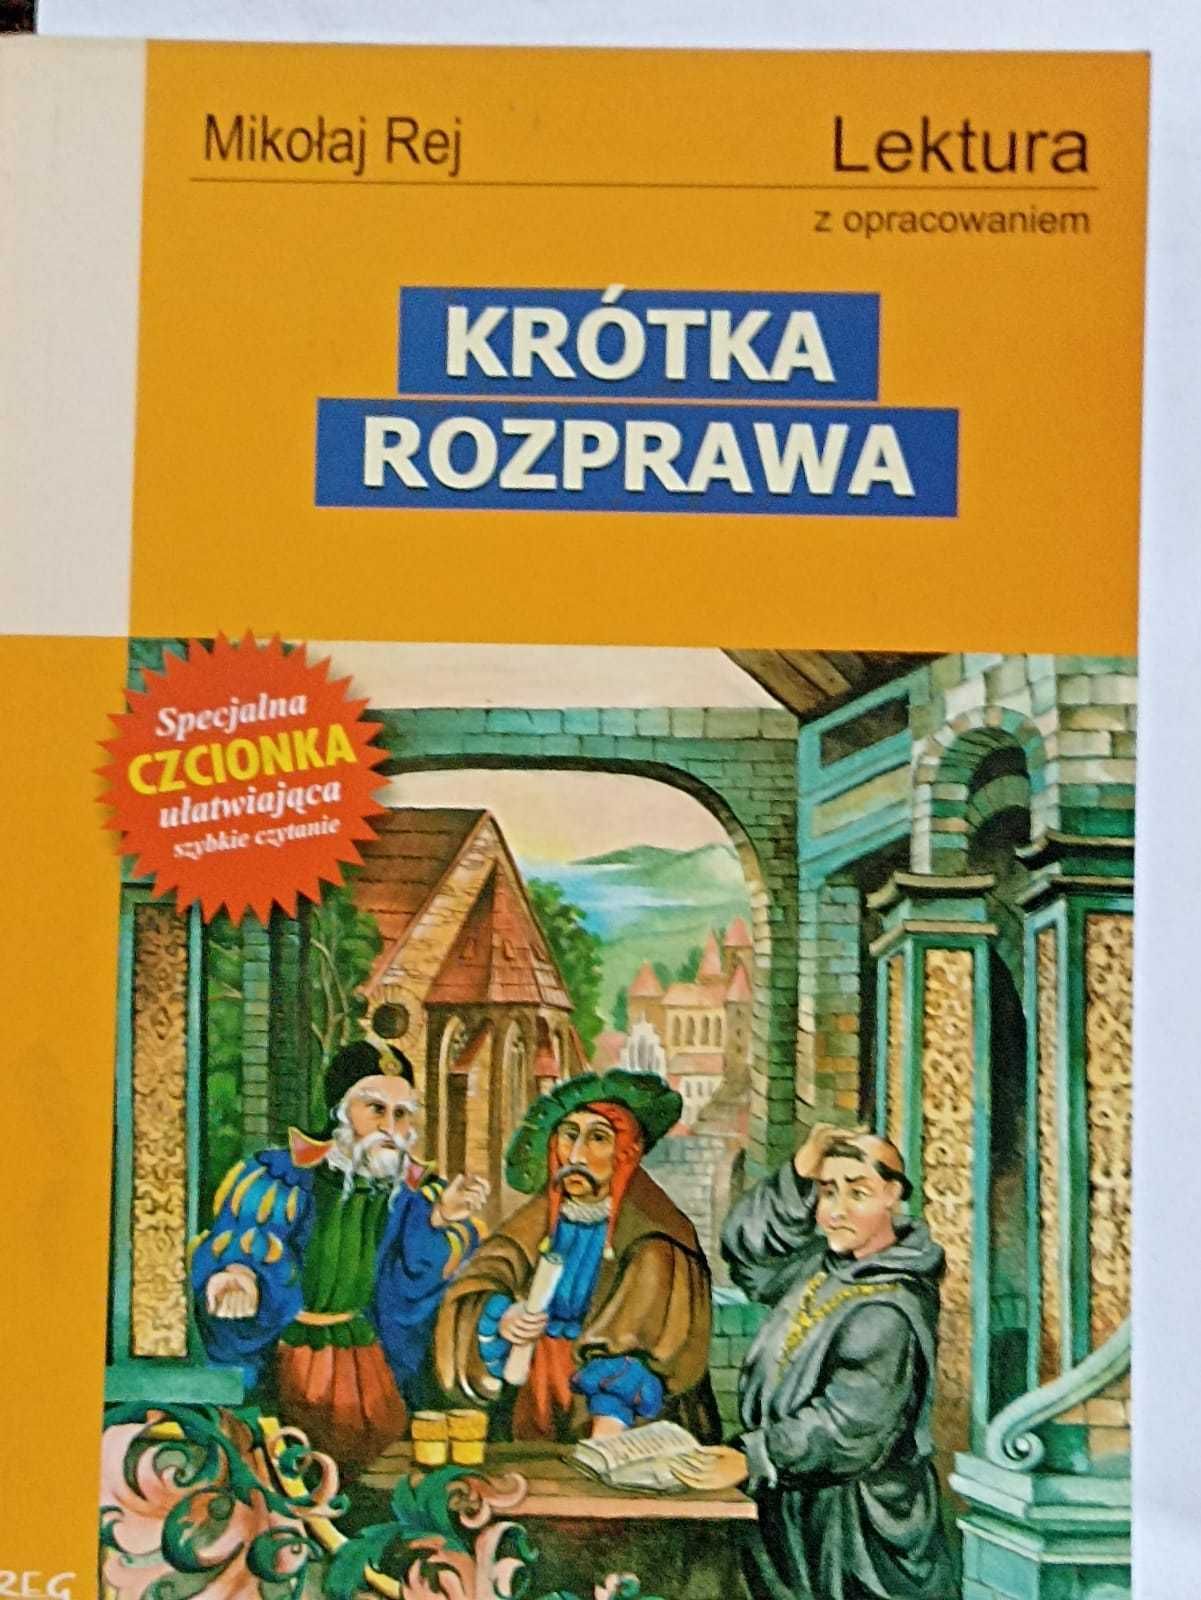 Książka Mikołaj Rej - Krótka rozprawa (z opracowaniem)